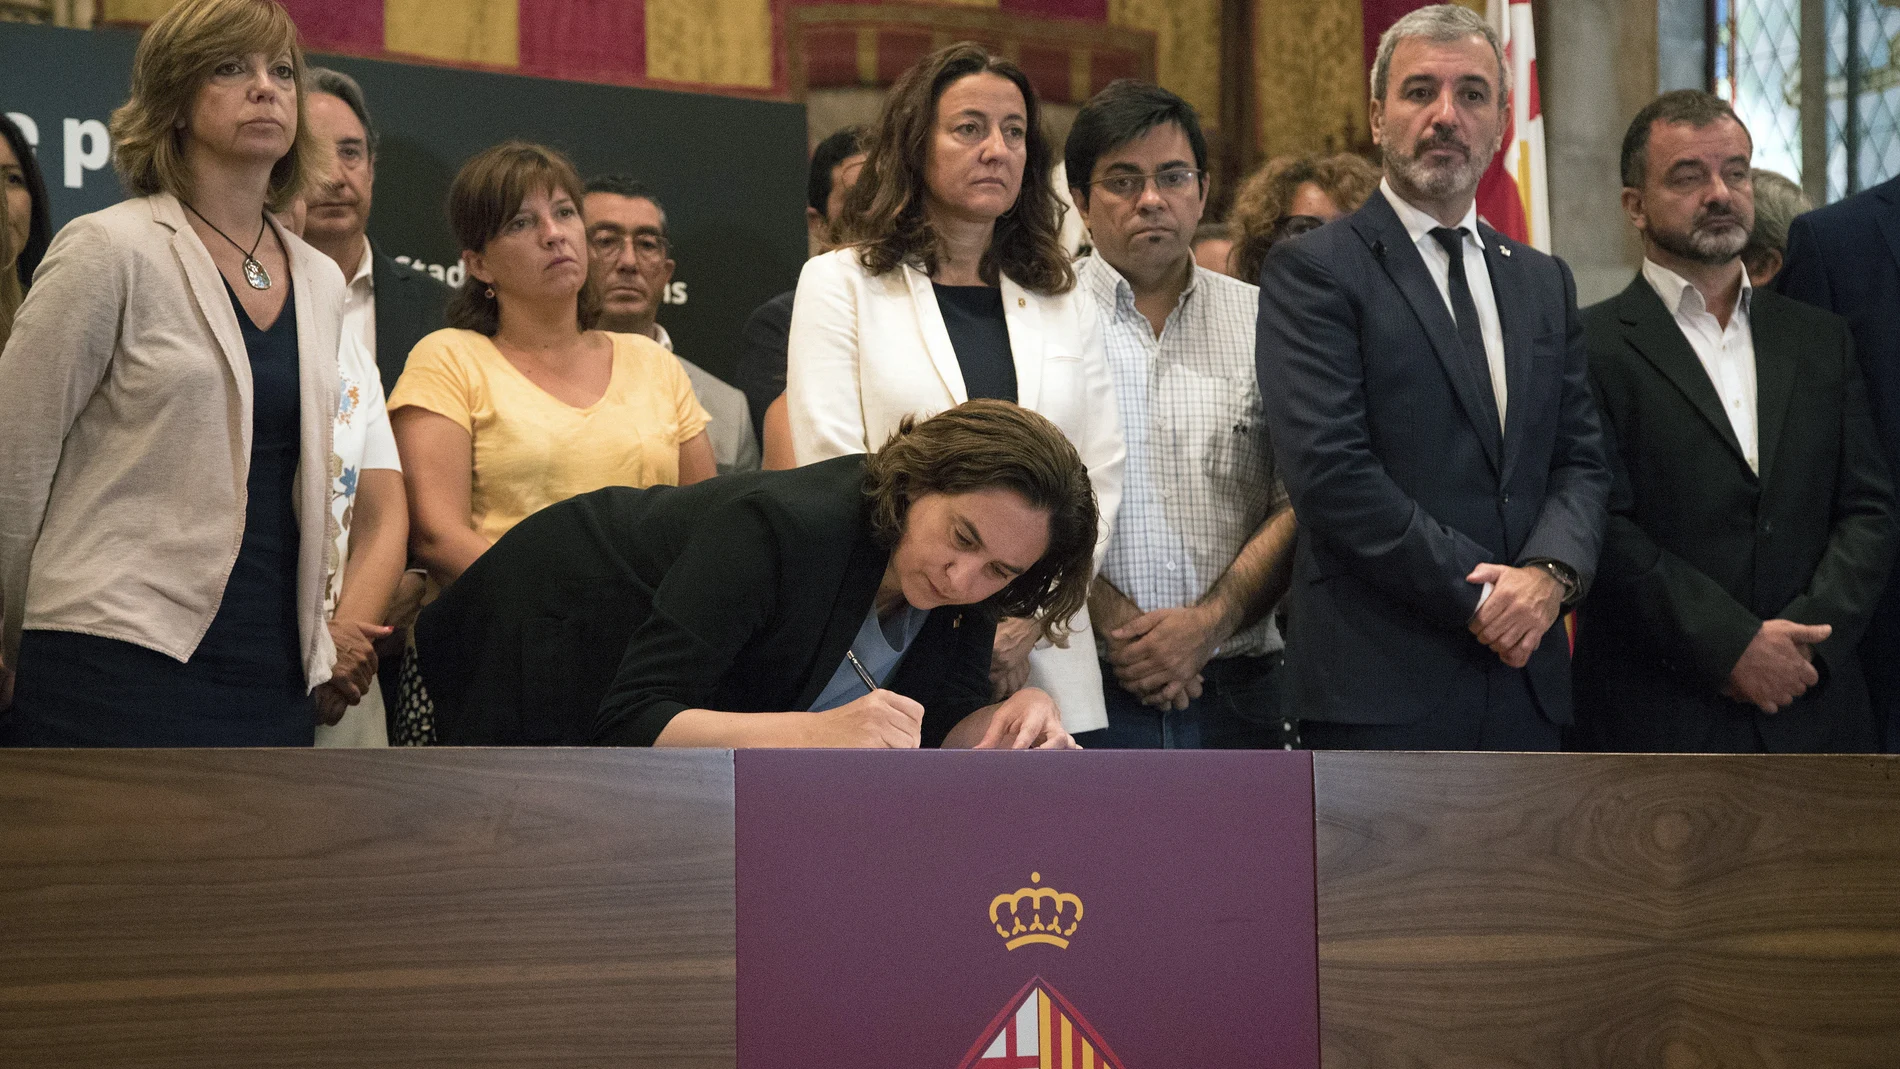 La alcaldesa de Barcelona, Ada Colau, acompañada de autoridades, firma en el libro de condolencias